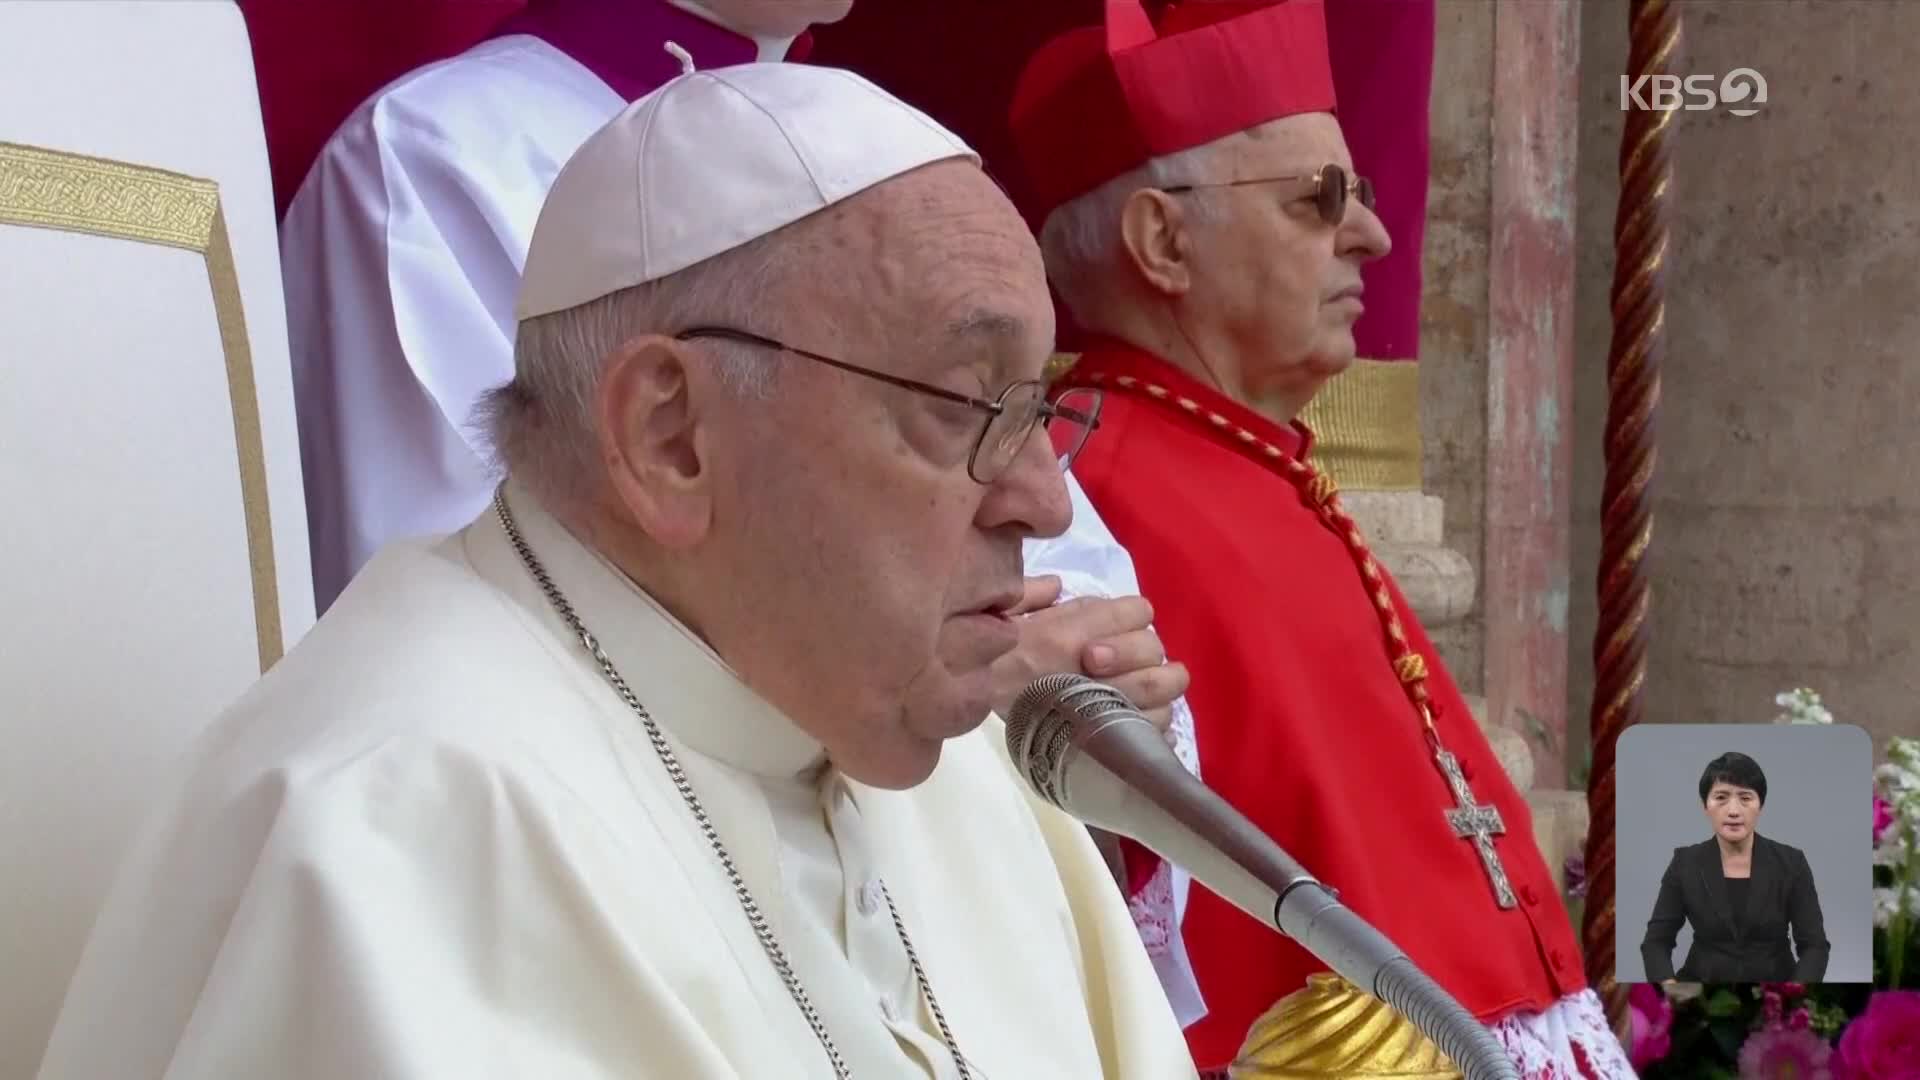 교황, 부활절 메시지…“평화, 무기로 만들어지지 않아”